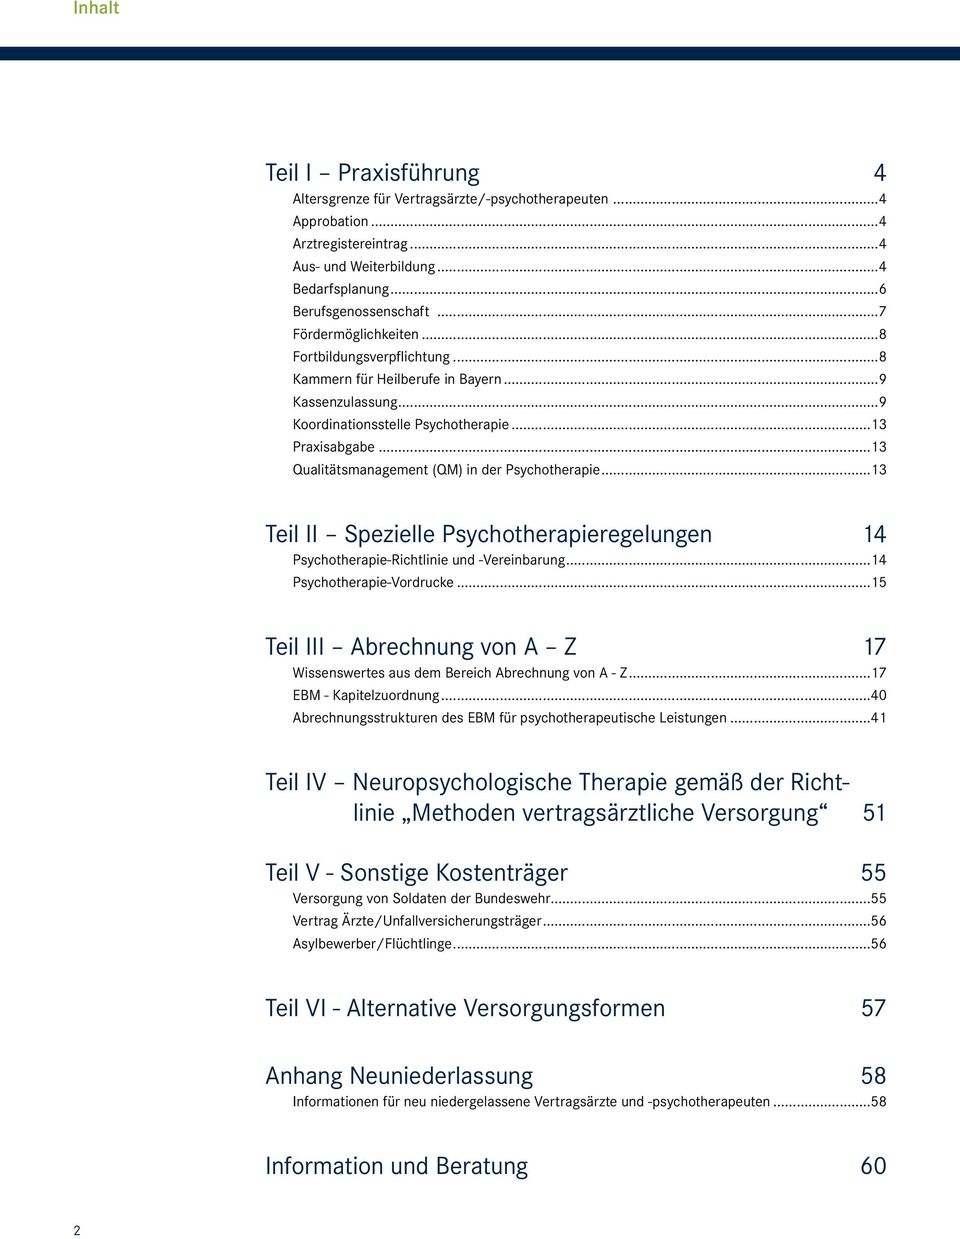 ..13 Qualitätsmanagement (QM) in der Psychotherapie...13 Teil II Spezielle Psychotherapieregelungen 14 Psychotherapie-Richtlinie und -Vereinbarung...14 Psychotherapie-Vordrucke.